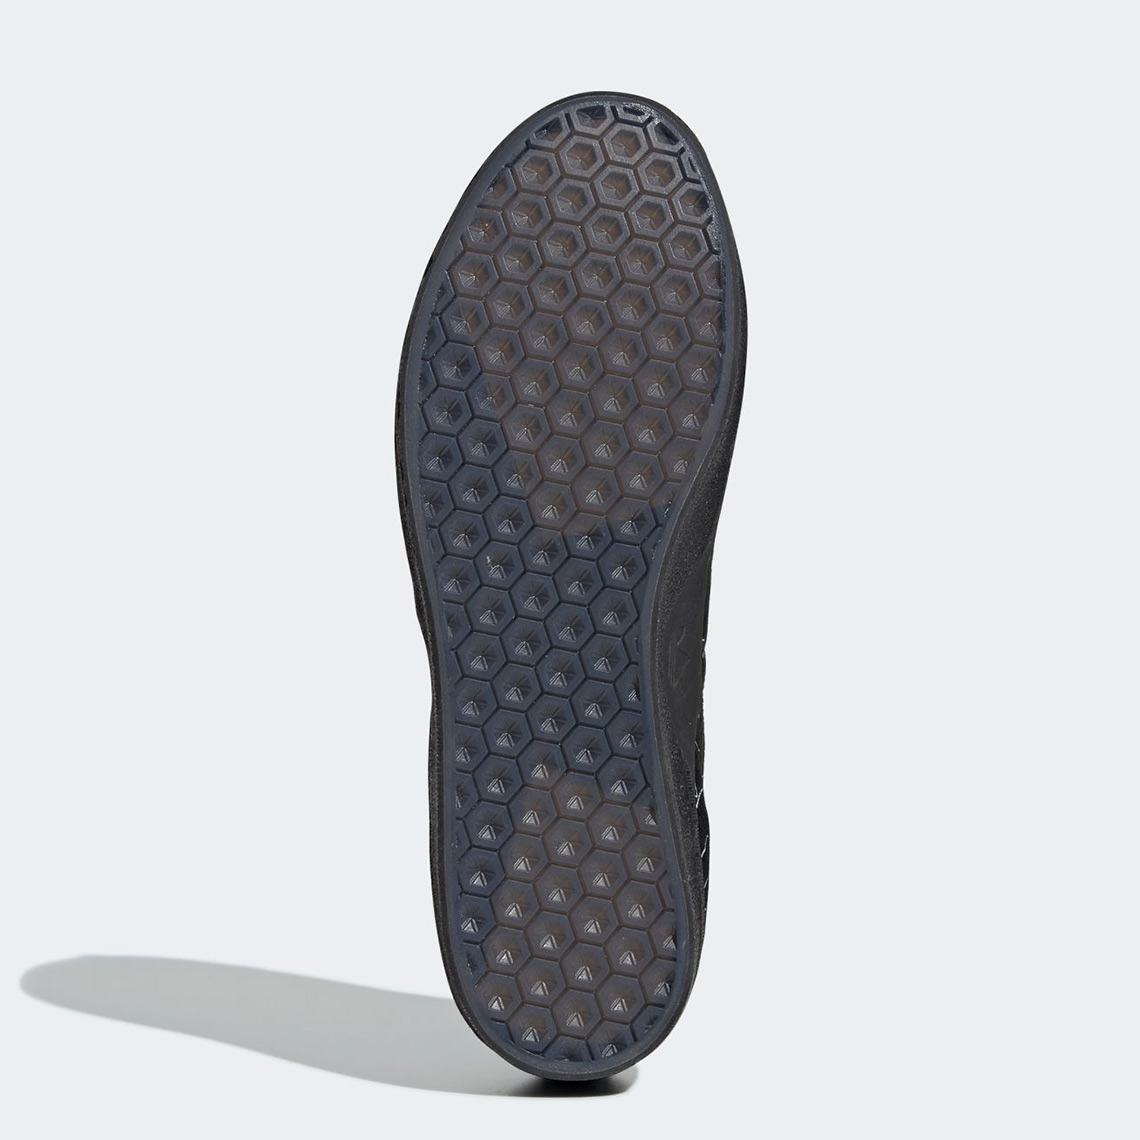 Paquete o empaquetar cable toda la vida BAPE adidas 3ST 003 DB3003 Release Info | SneakerNews.com